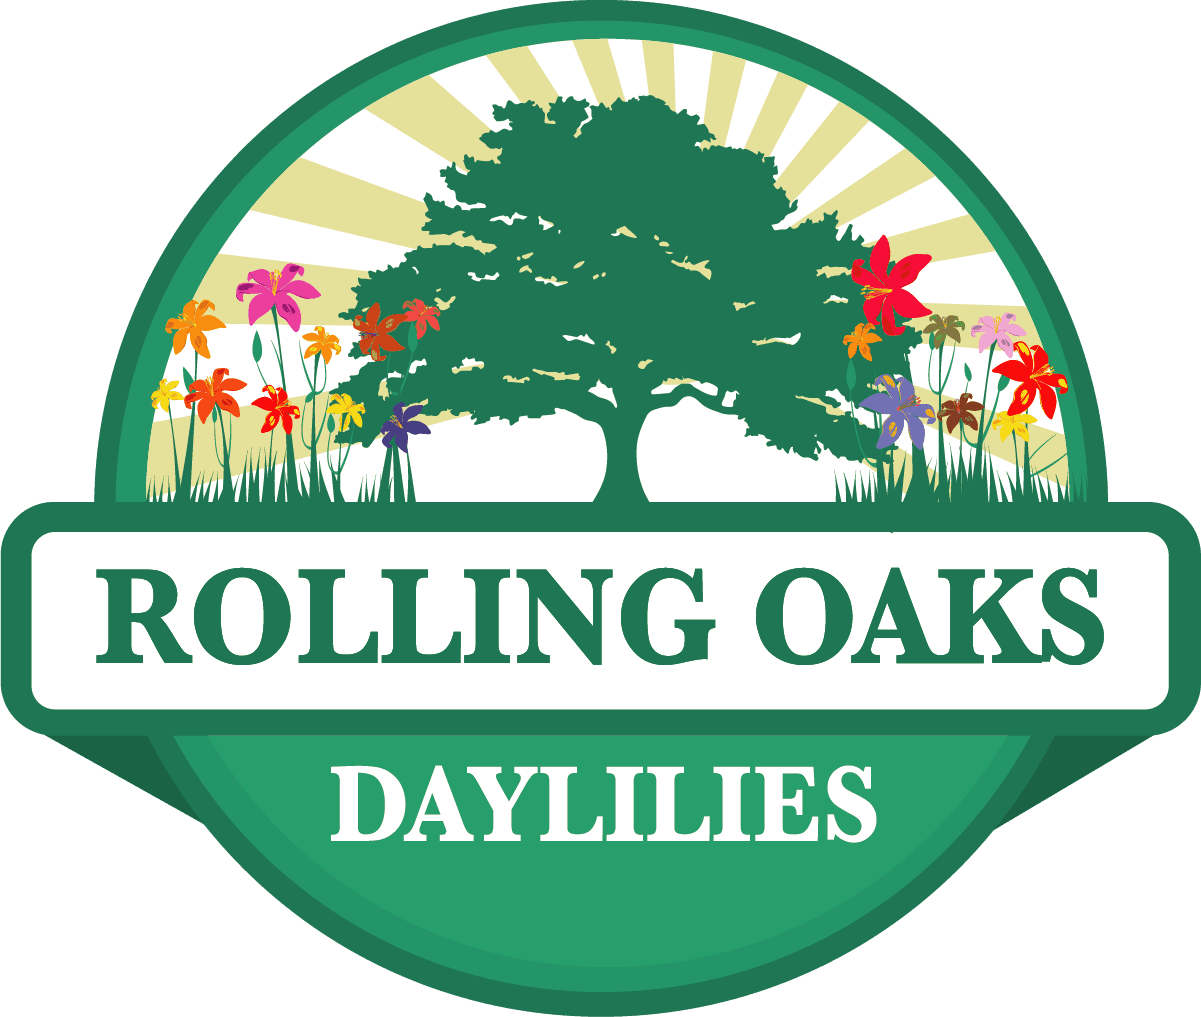 Rolling Oaks Daylilies logo